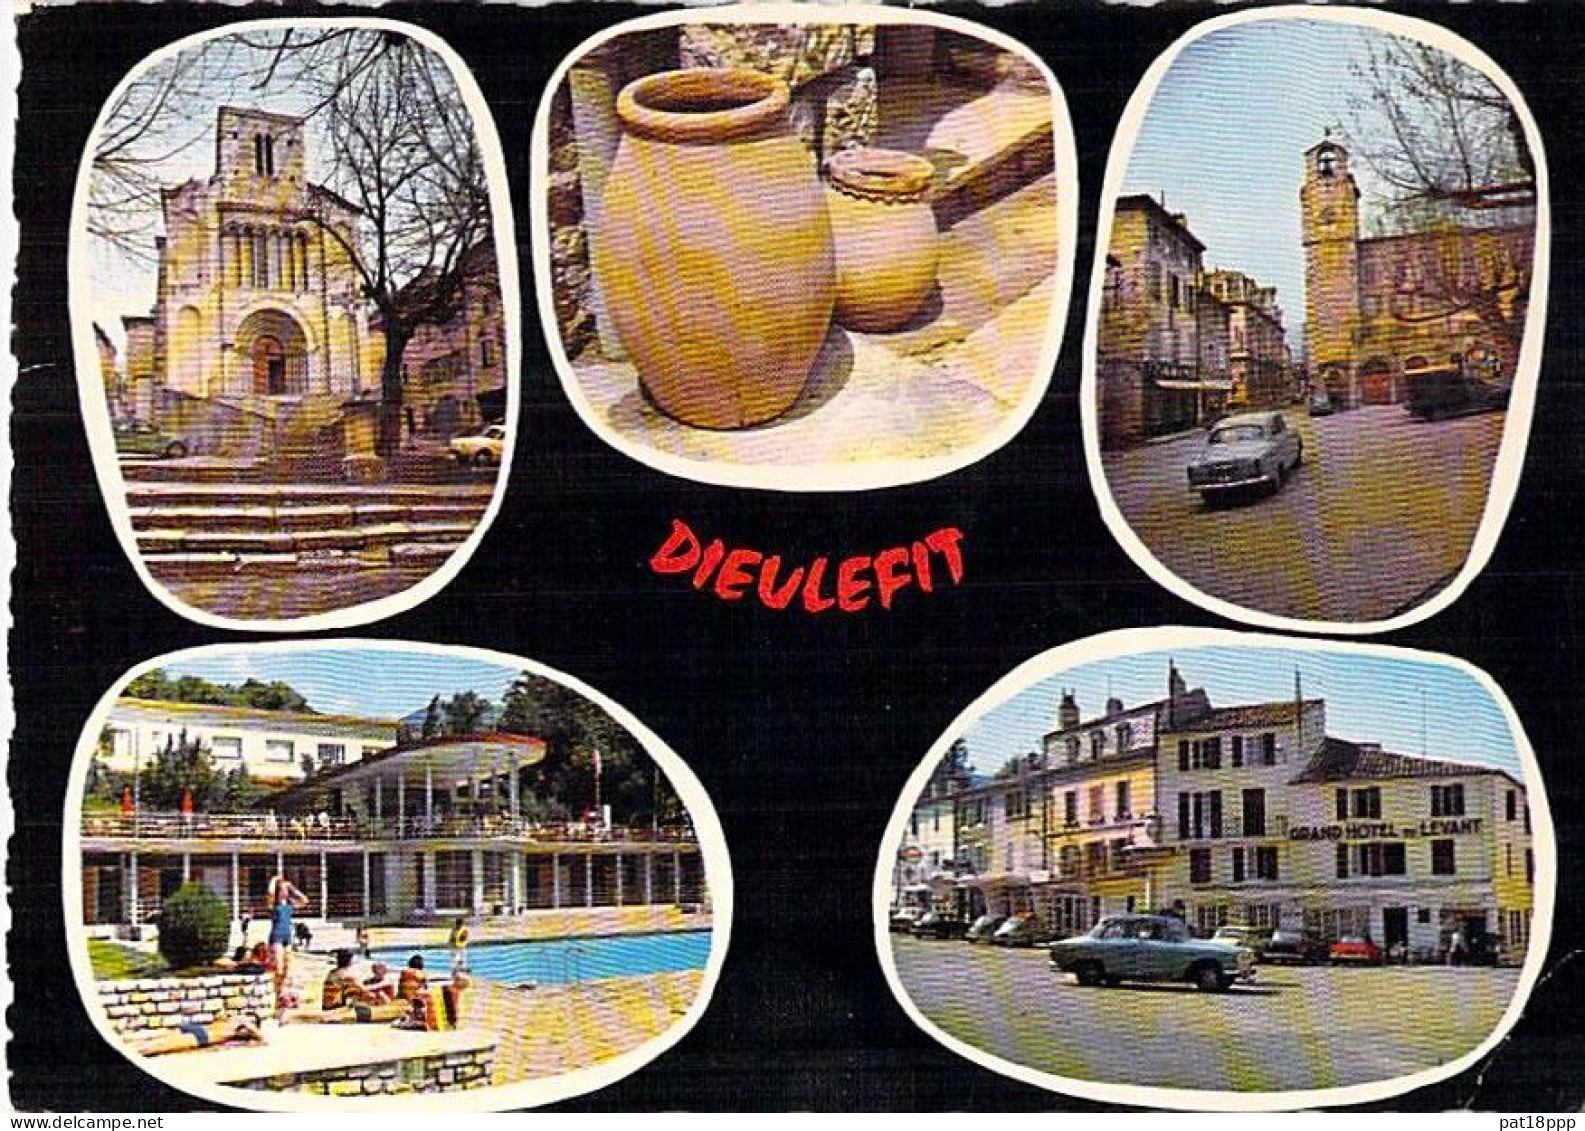 FRANCE - Bon lot de 20 CPSM MULTIVUES dentelées et colorisées (1960-80's) Grand Format